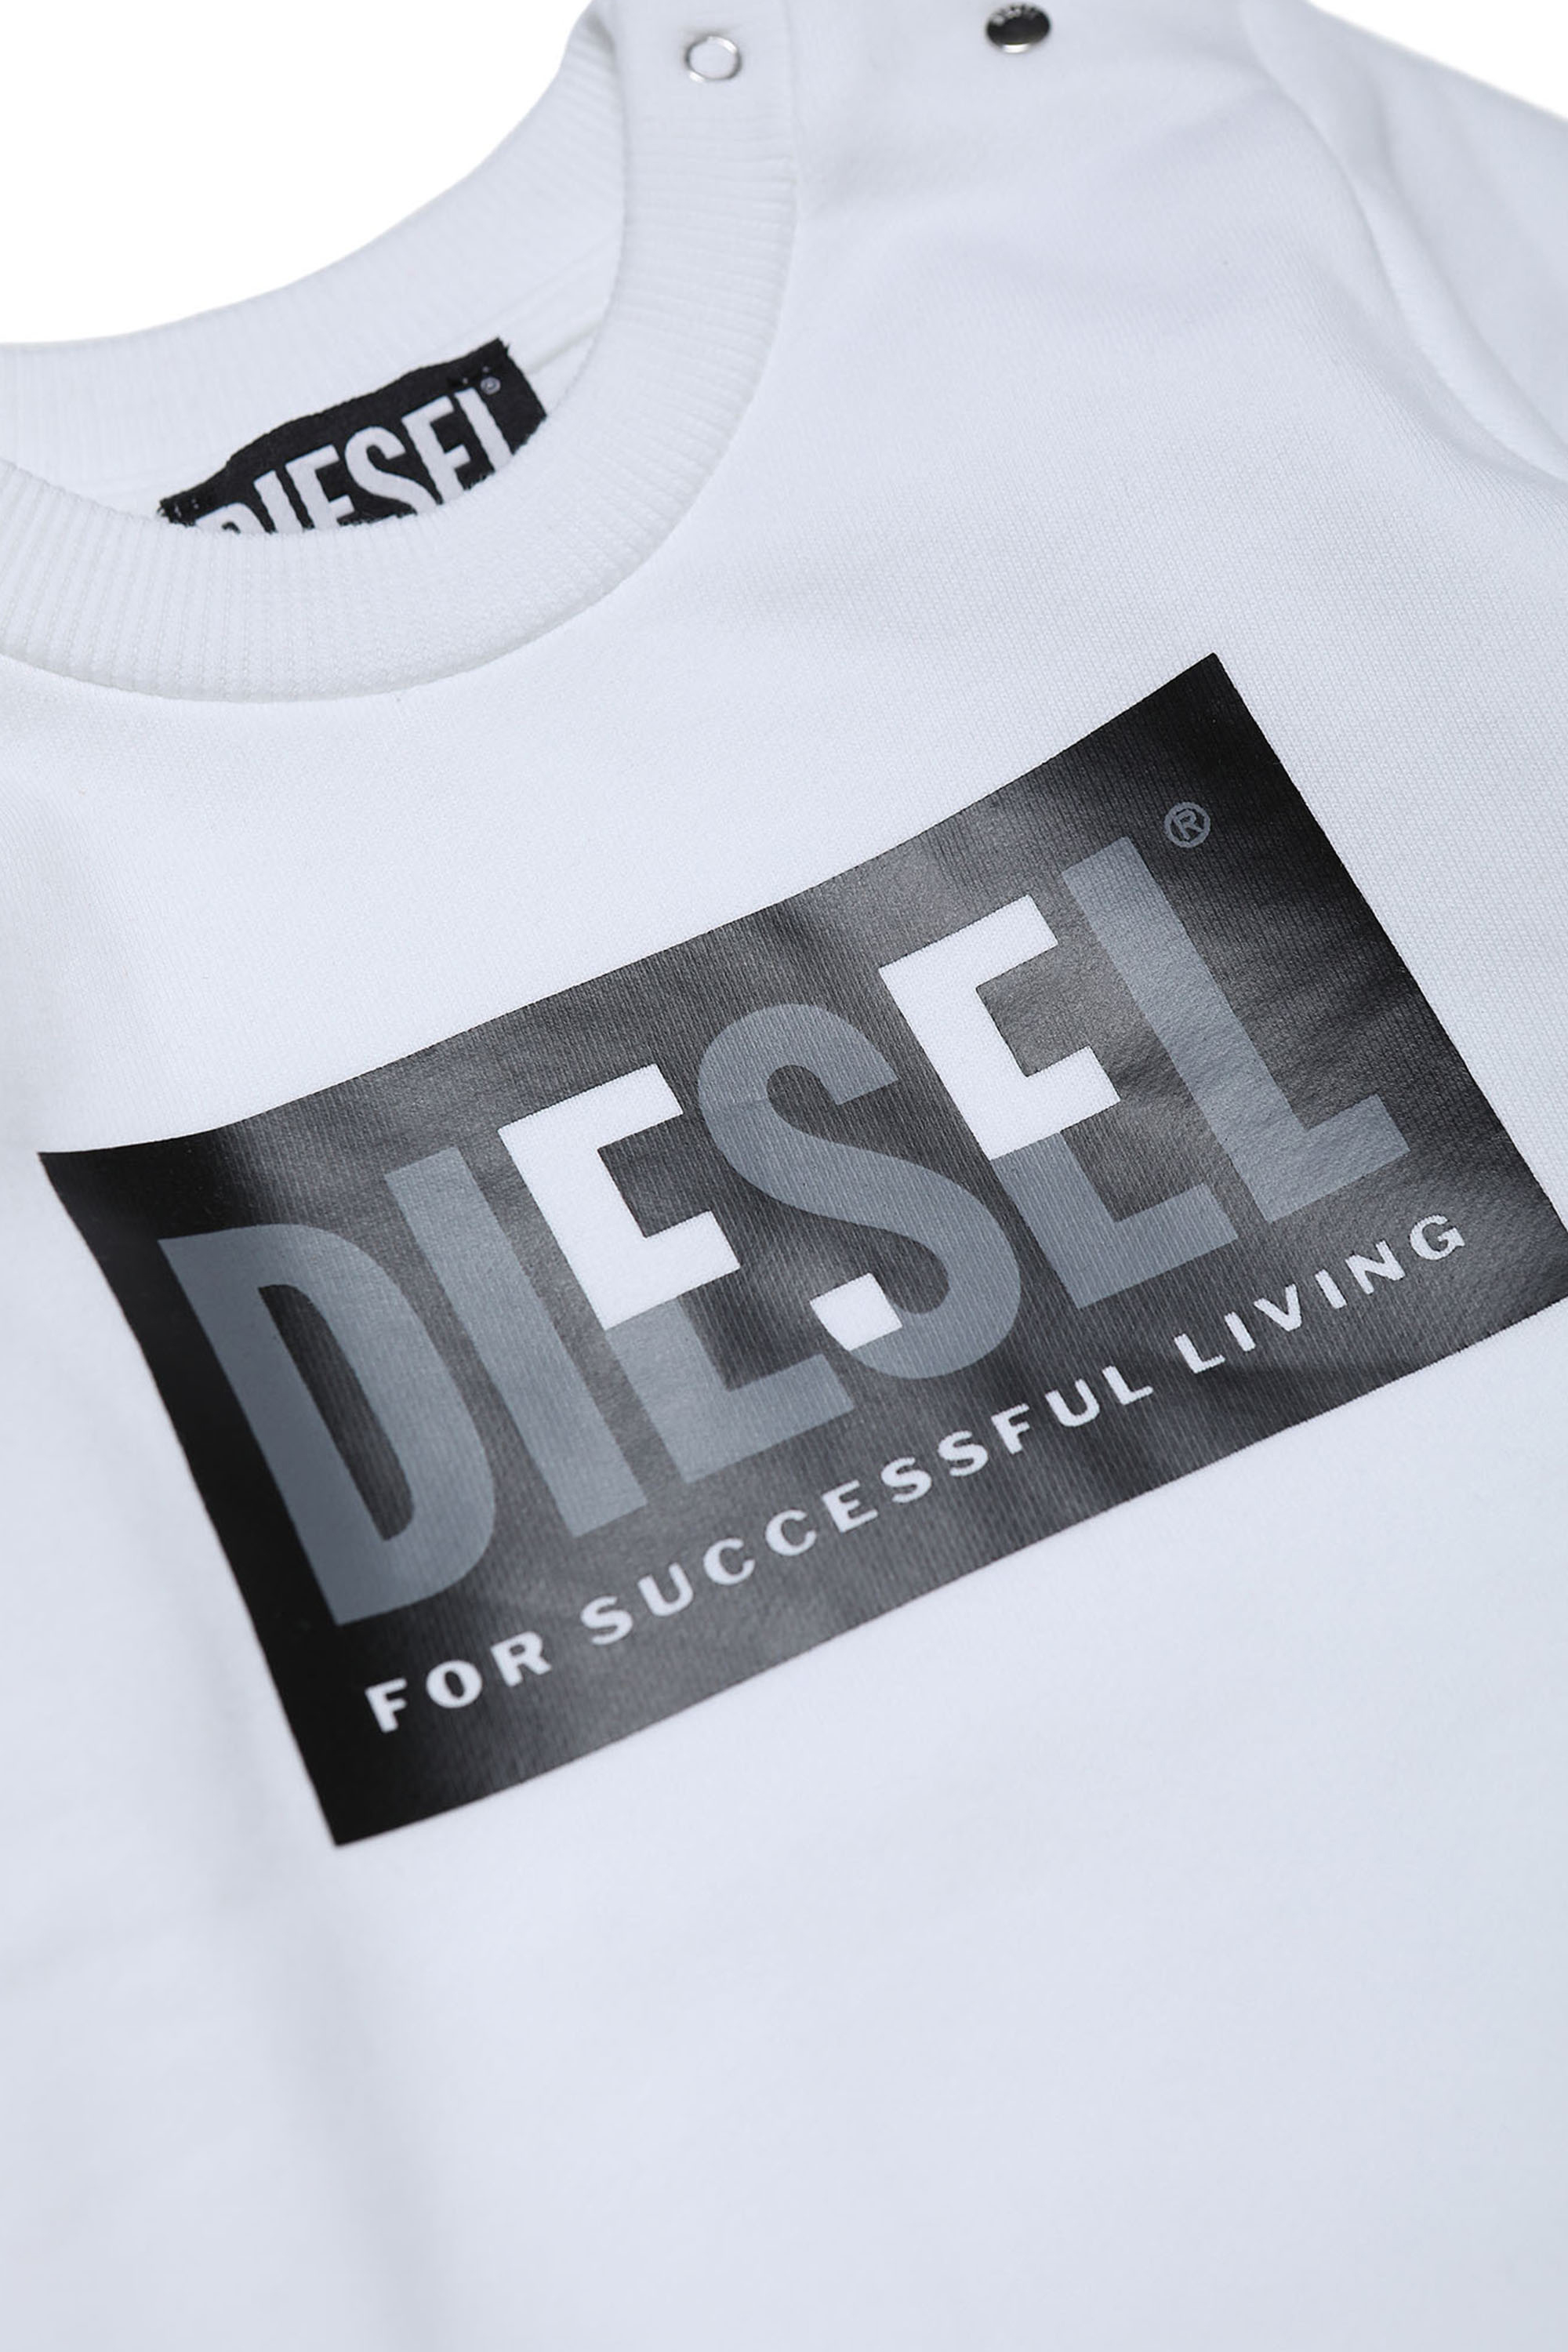 Diesel - SCREWMILEYB, Blanco - Image 3